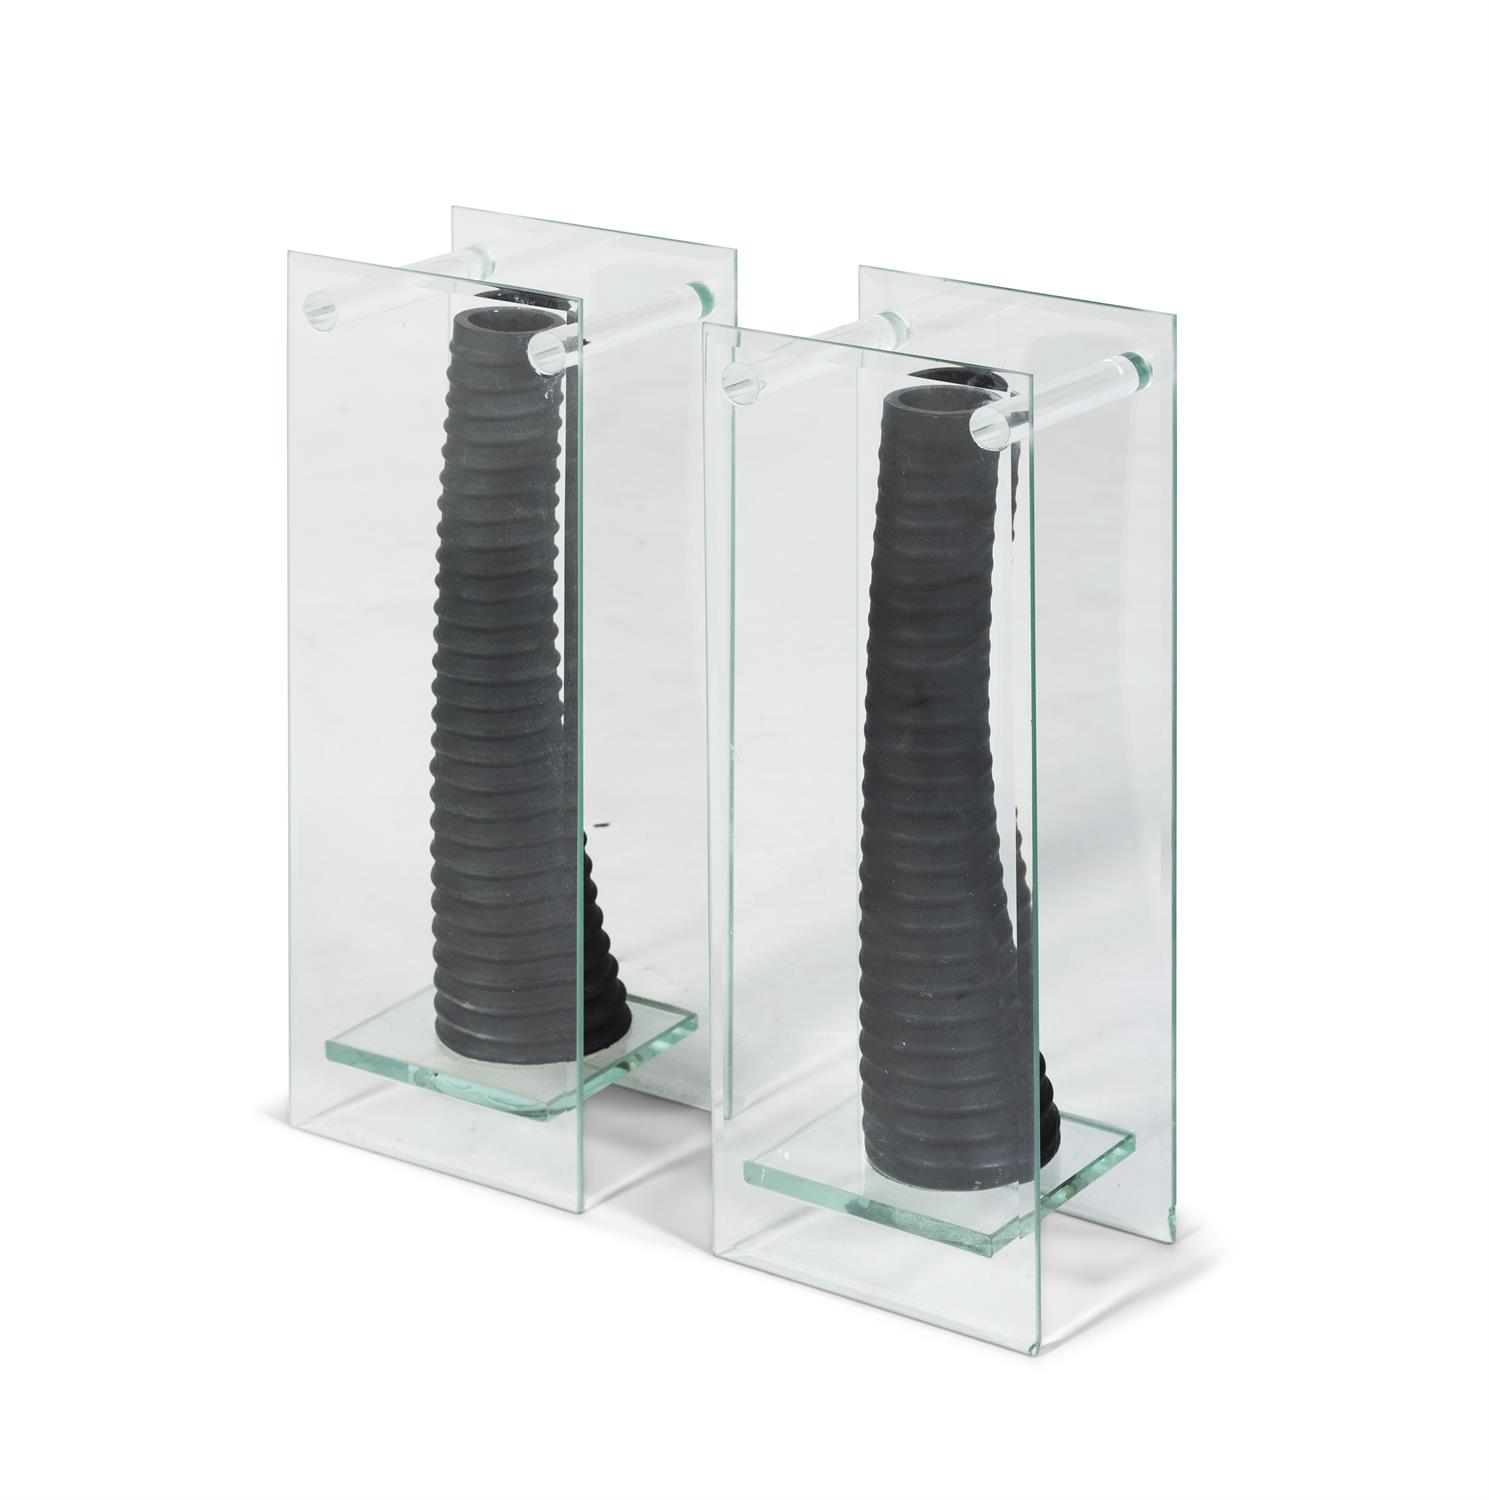 VASES A pair of glass vases. Italy. 13 x 10 x 35cm(h) - Bild 3 aus 3